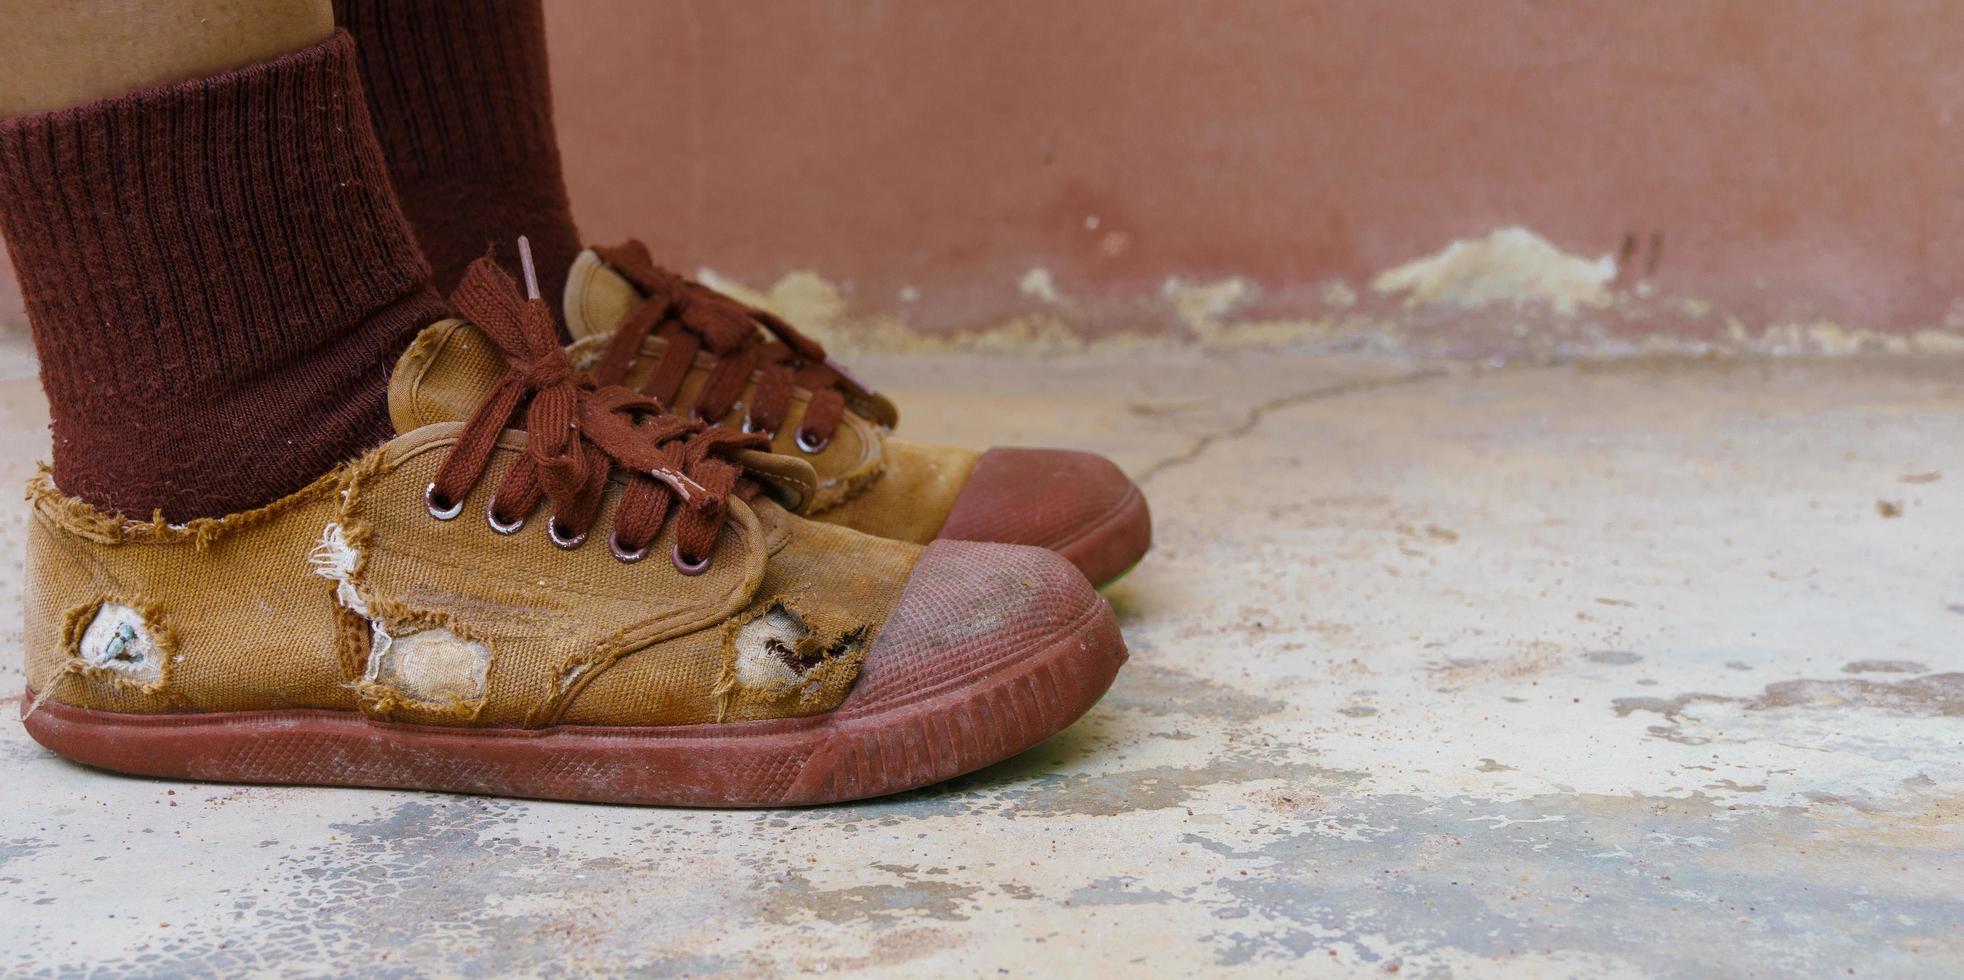 sapatos de estudante rasgados, pobreza das crianças em idade escolar rural muitas vezes não podem comprar sapatos novos, pernas de estudante do ensino médio usando sapatos rasgados, falta de equipamentos educacionais, tênis velhos e desgastados foto